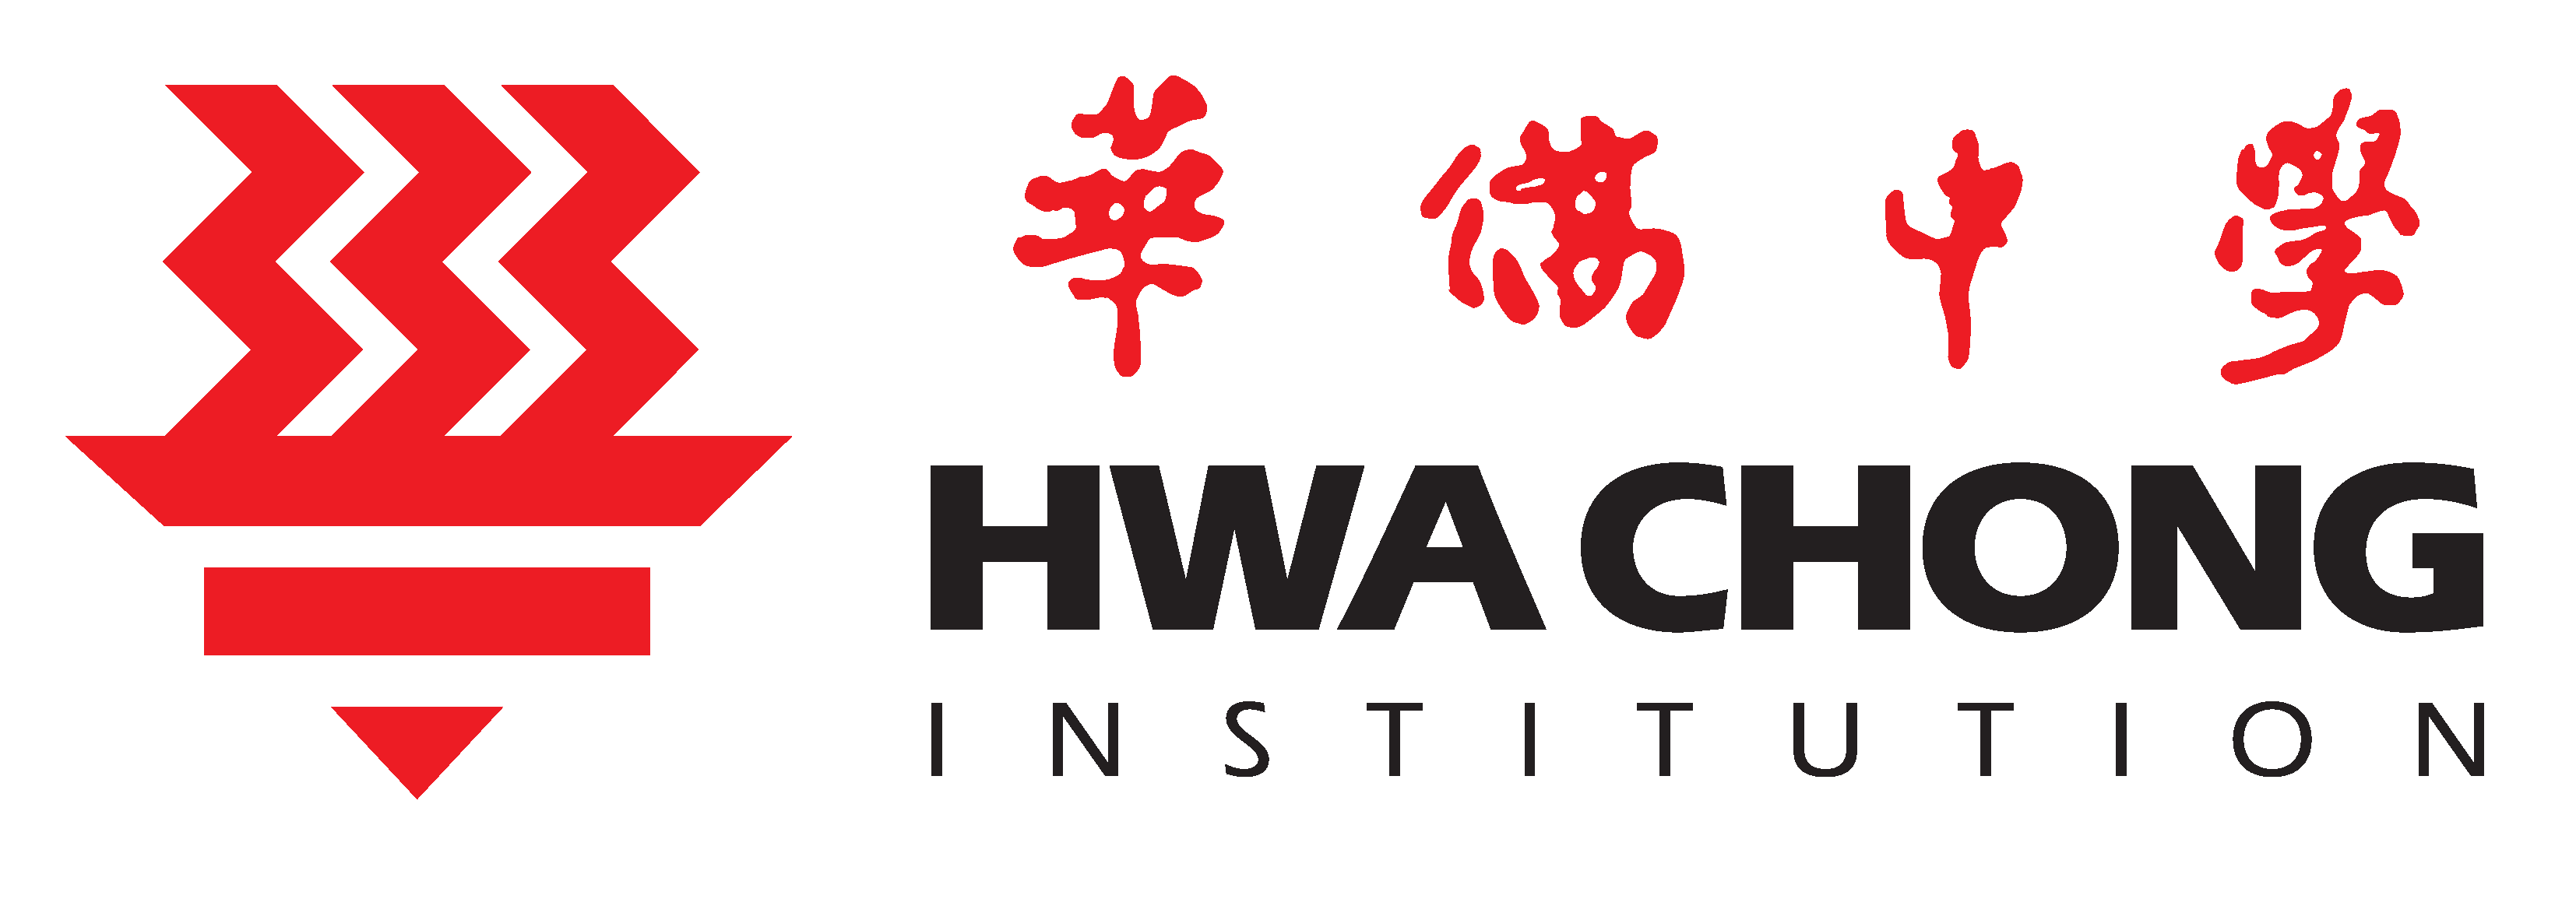 logo hwa chong institution